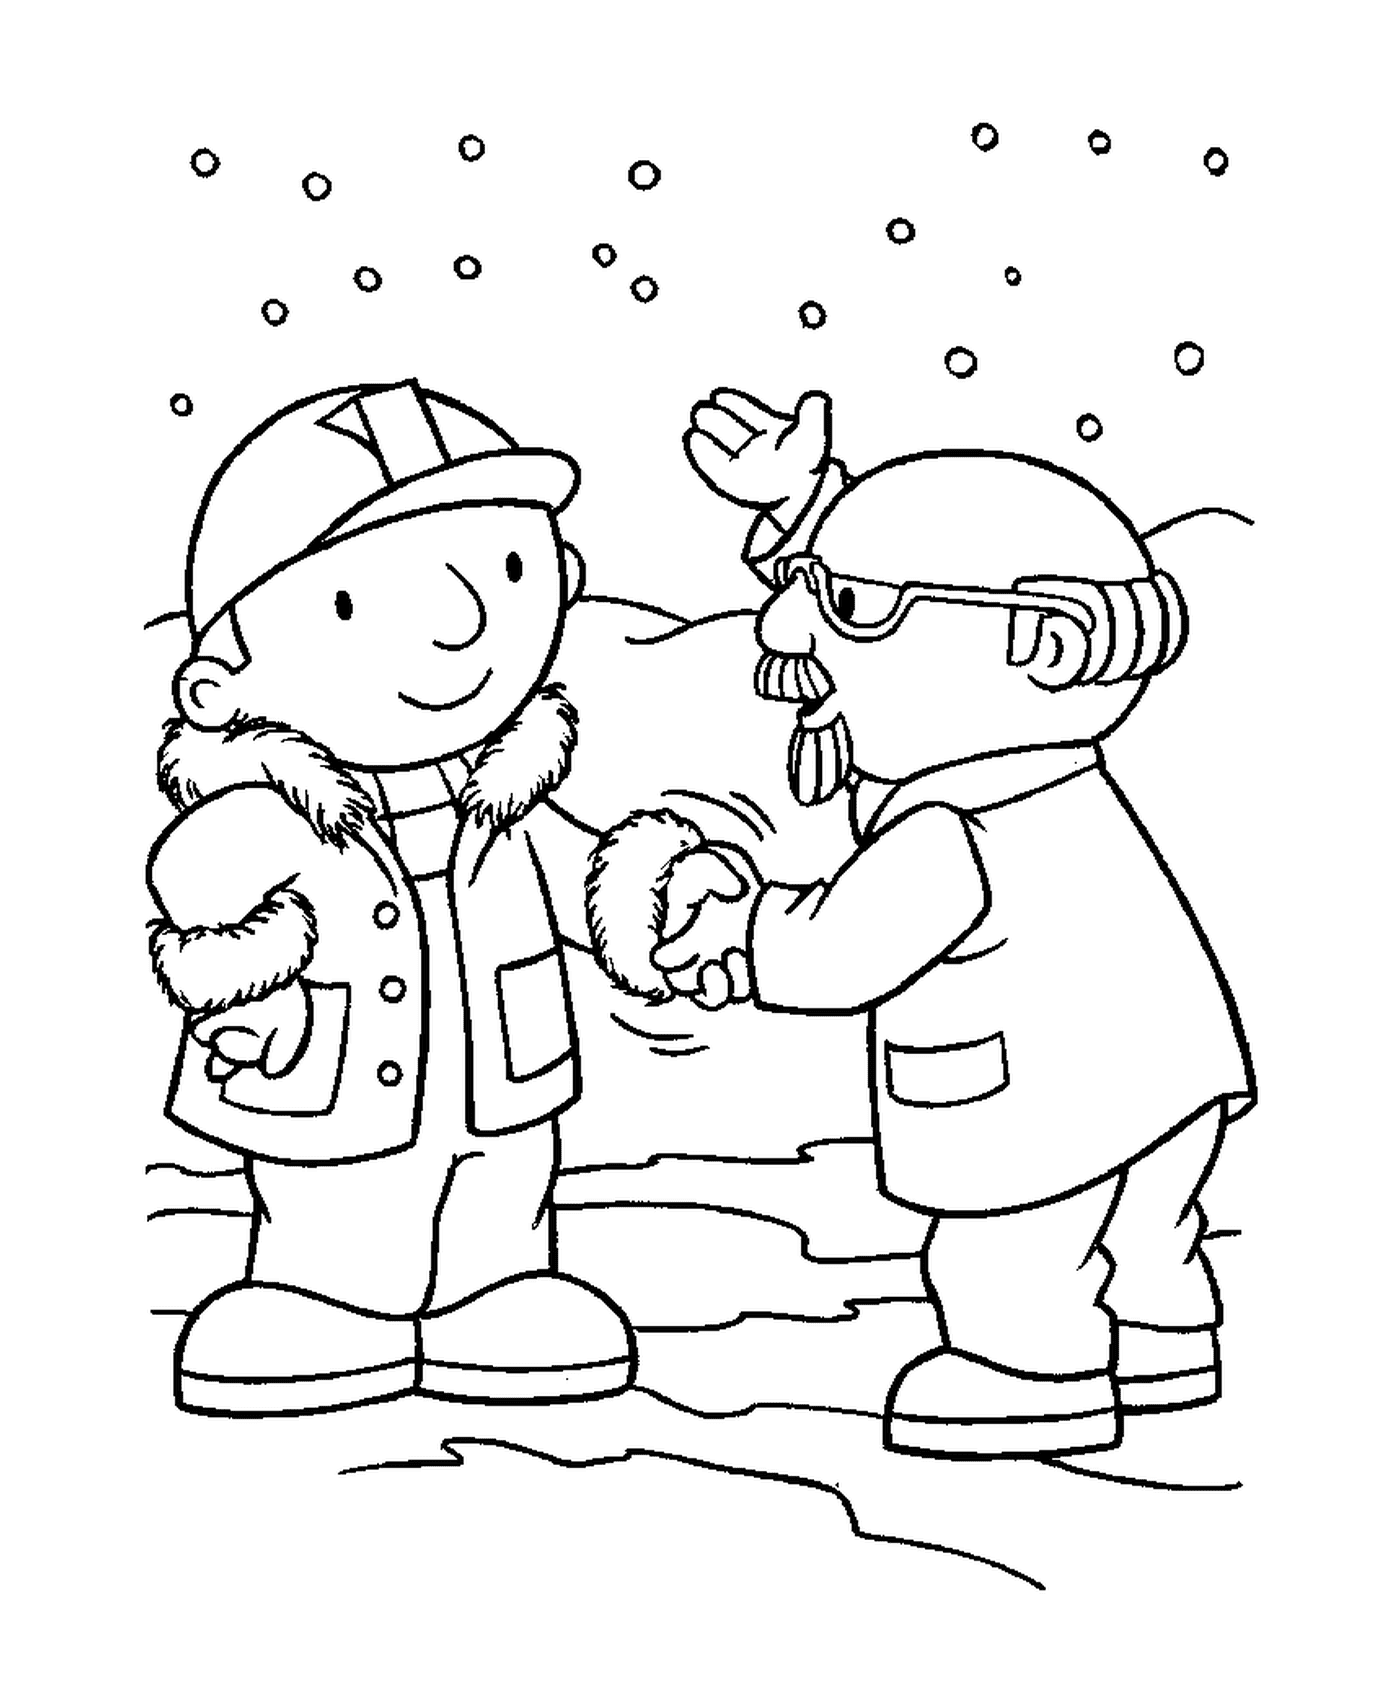  Dos personas se dan la mano en la nieve 